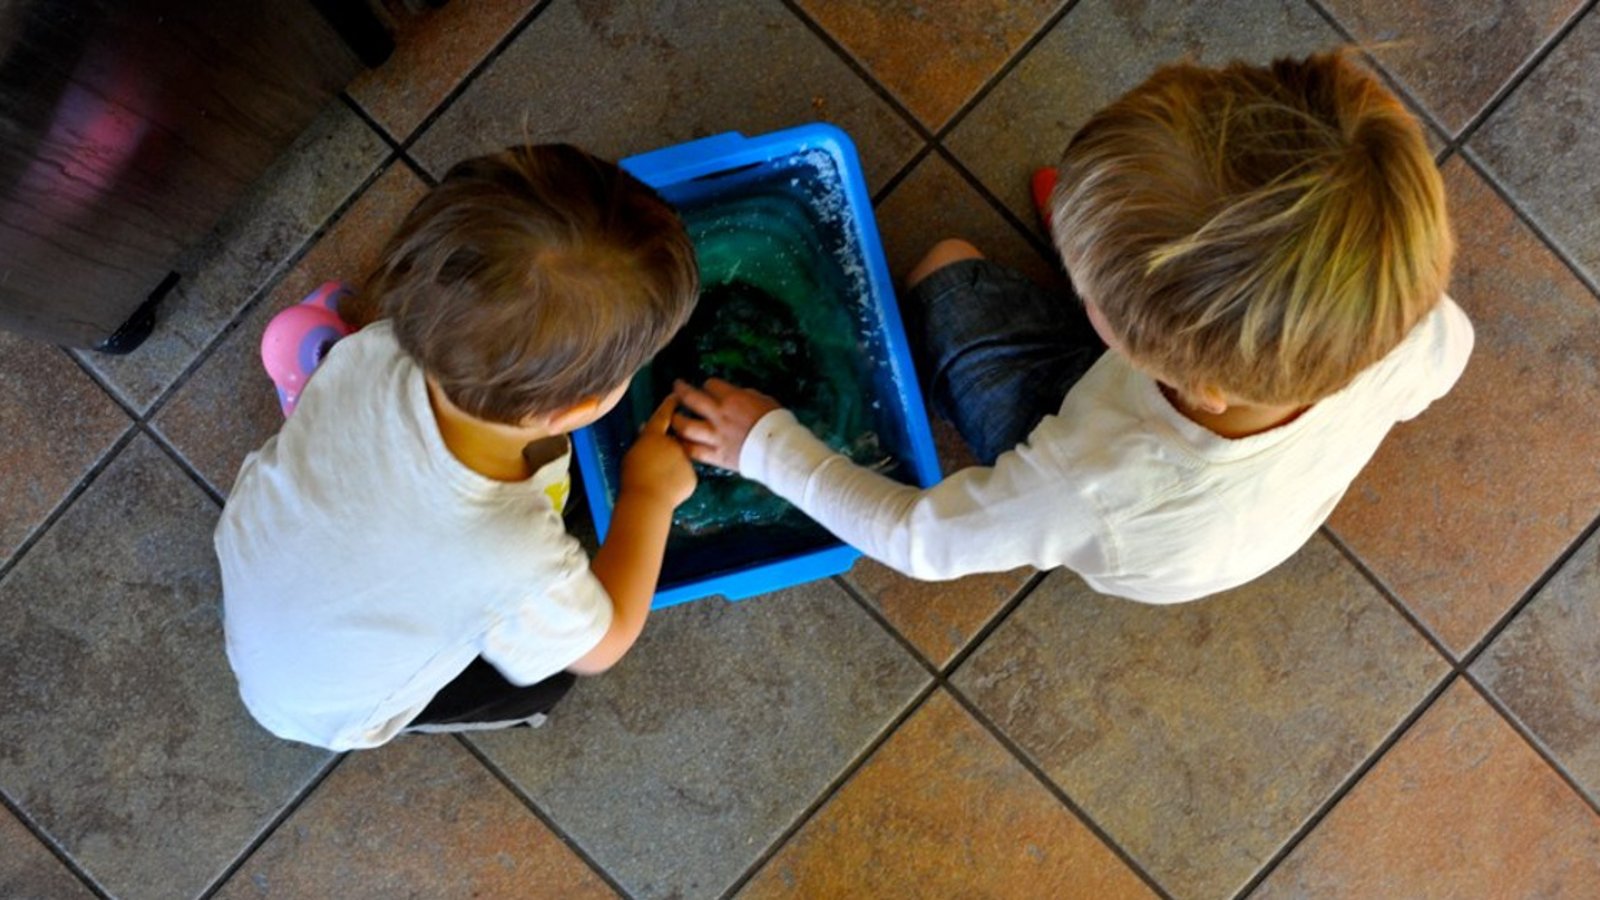 Maman ajoute de l'eau coloré dans un grand bac en plastique et le congèle! Les enfants passent des heures à jouer avec son idée! 